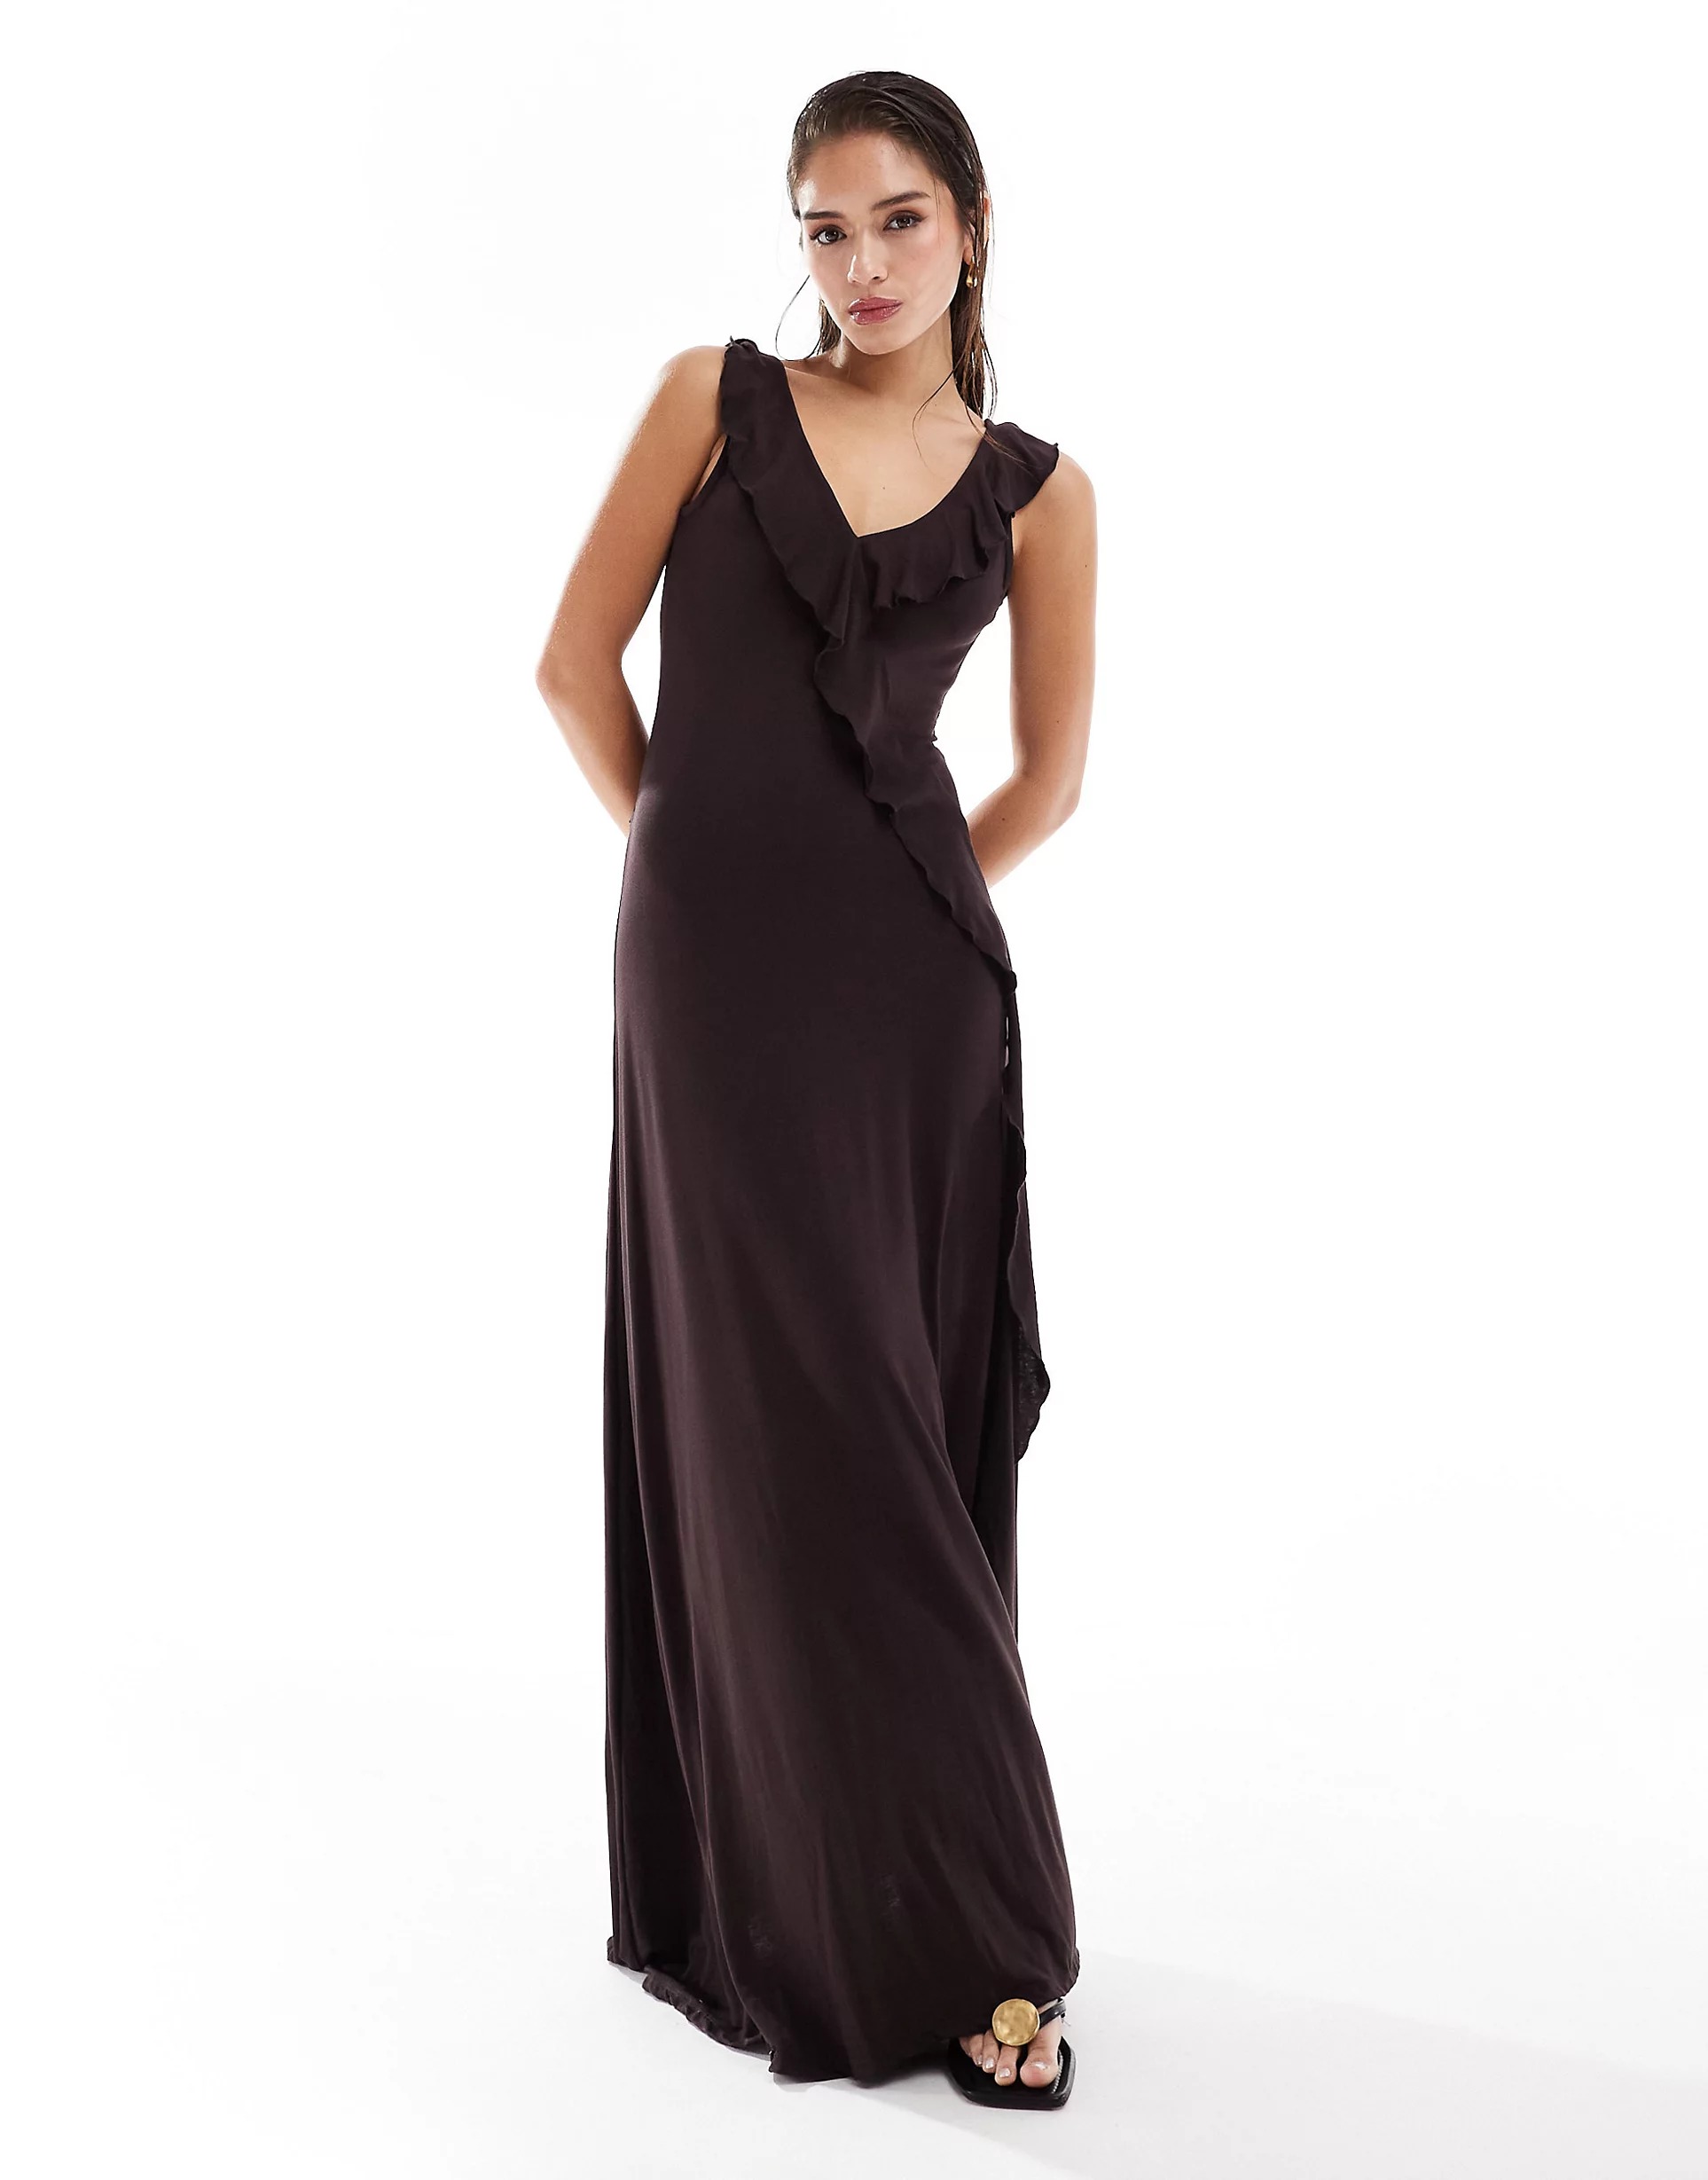 Платье макси Asos Design Sleeveless Ruffle Midaxi, коричневый платье макси asos sleeveless drape detail черный розовый